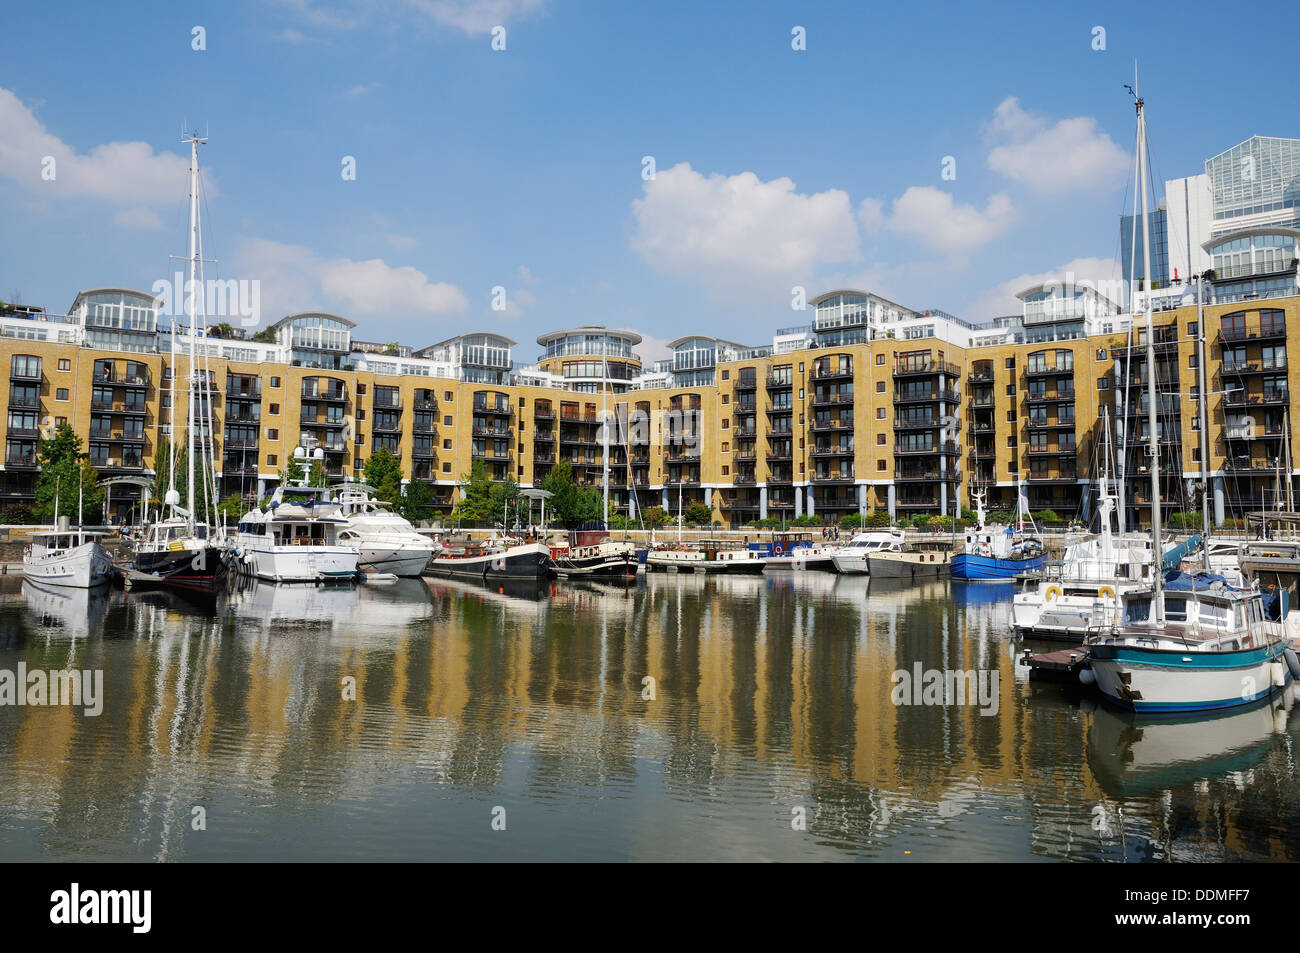 St Katherine Docks, Tower Hamlets, Londres, Royaume-Uni, avec immeubles à appartements et yachts Banque D'Images